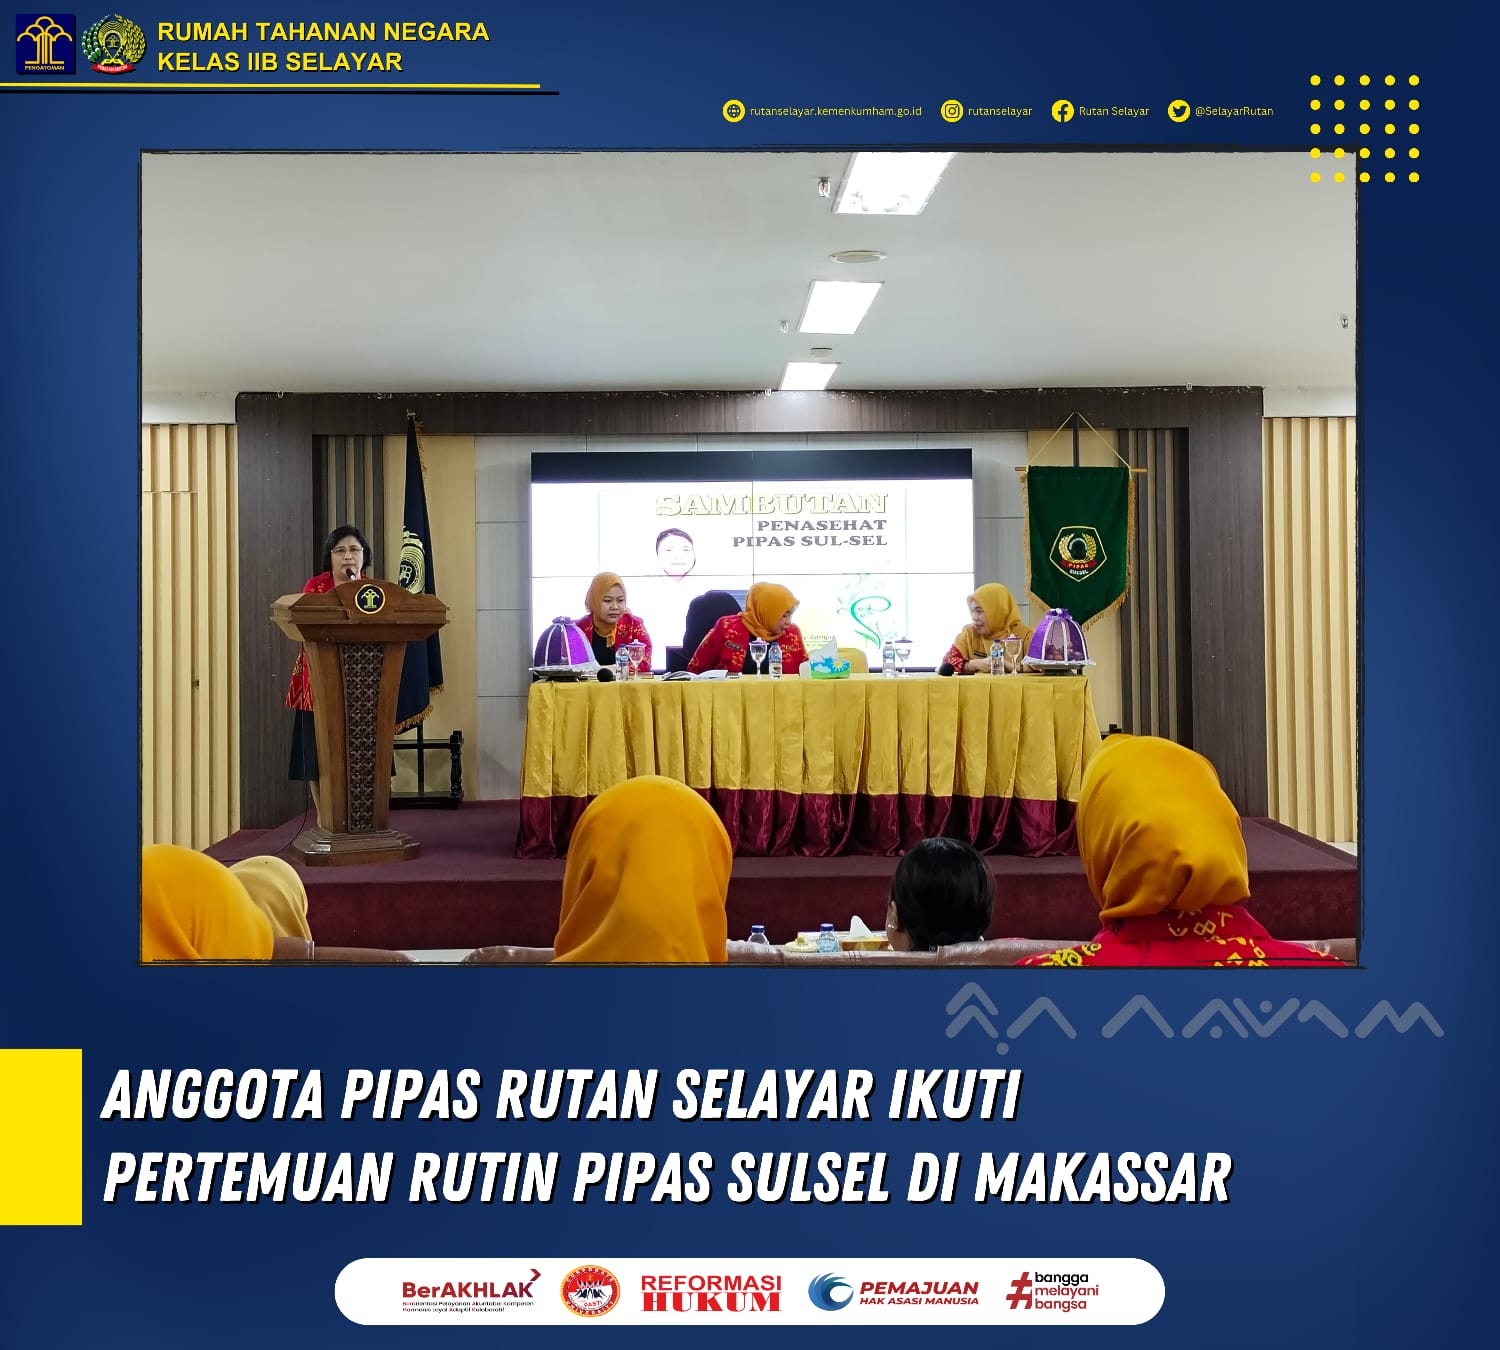 Anggota PIPAS Rutan Selayar Ikuti Pertemuan Rutin PIPAS Sulsel di Makassar